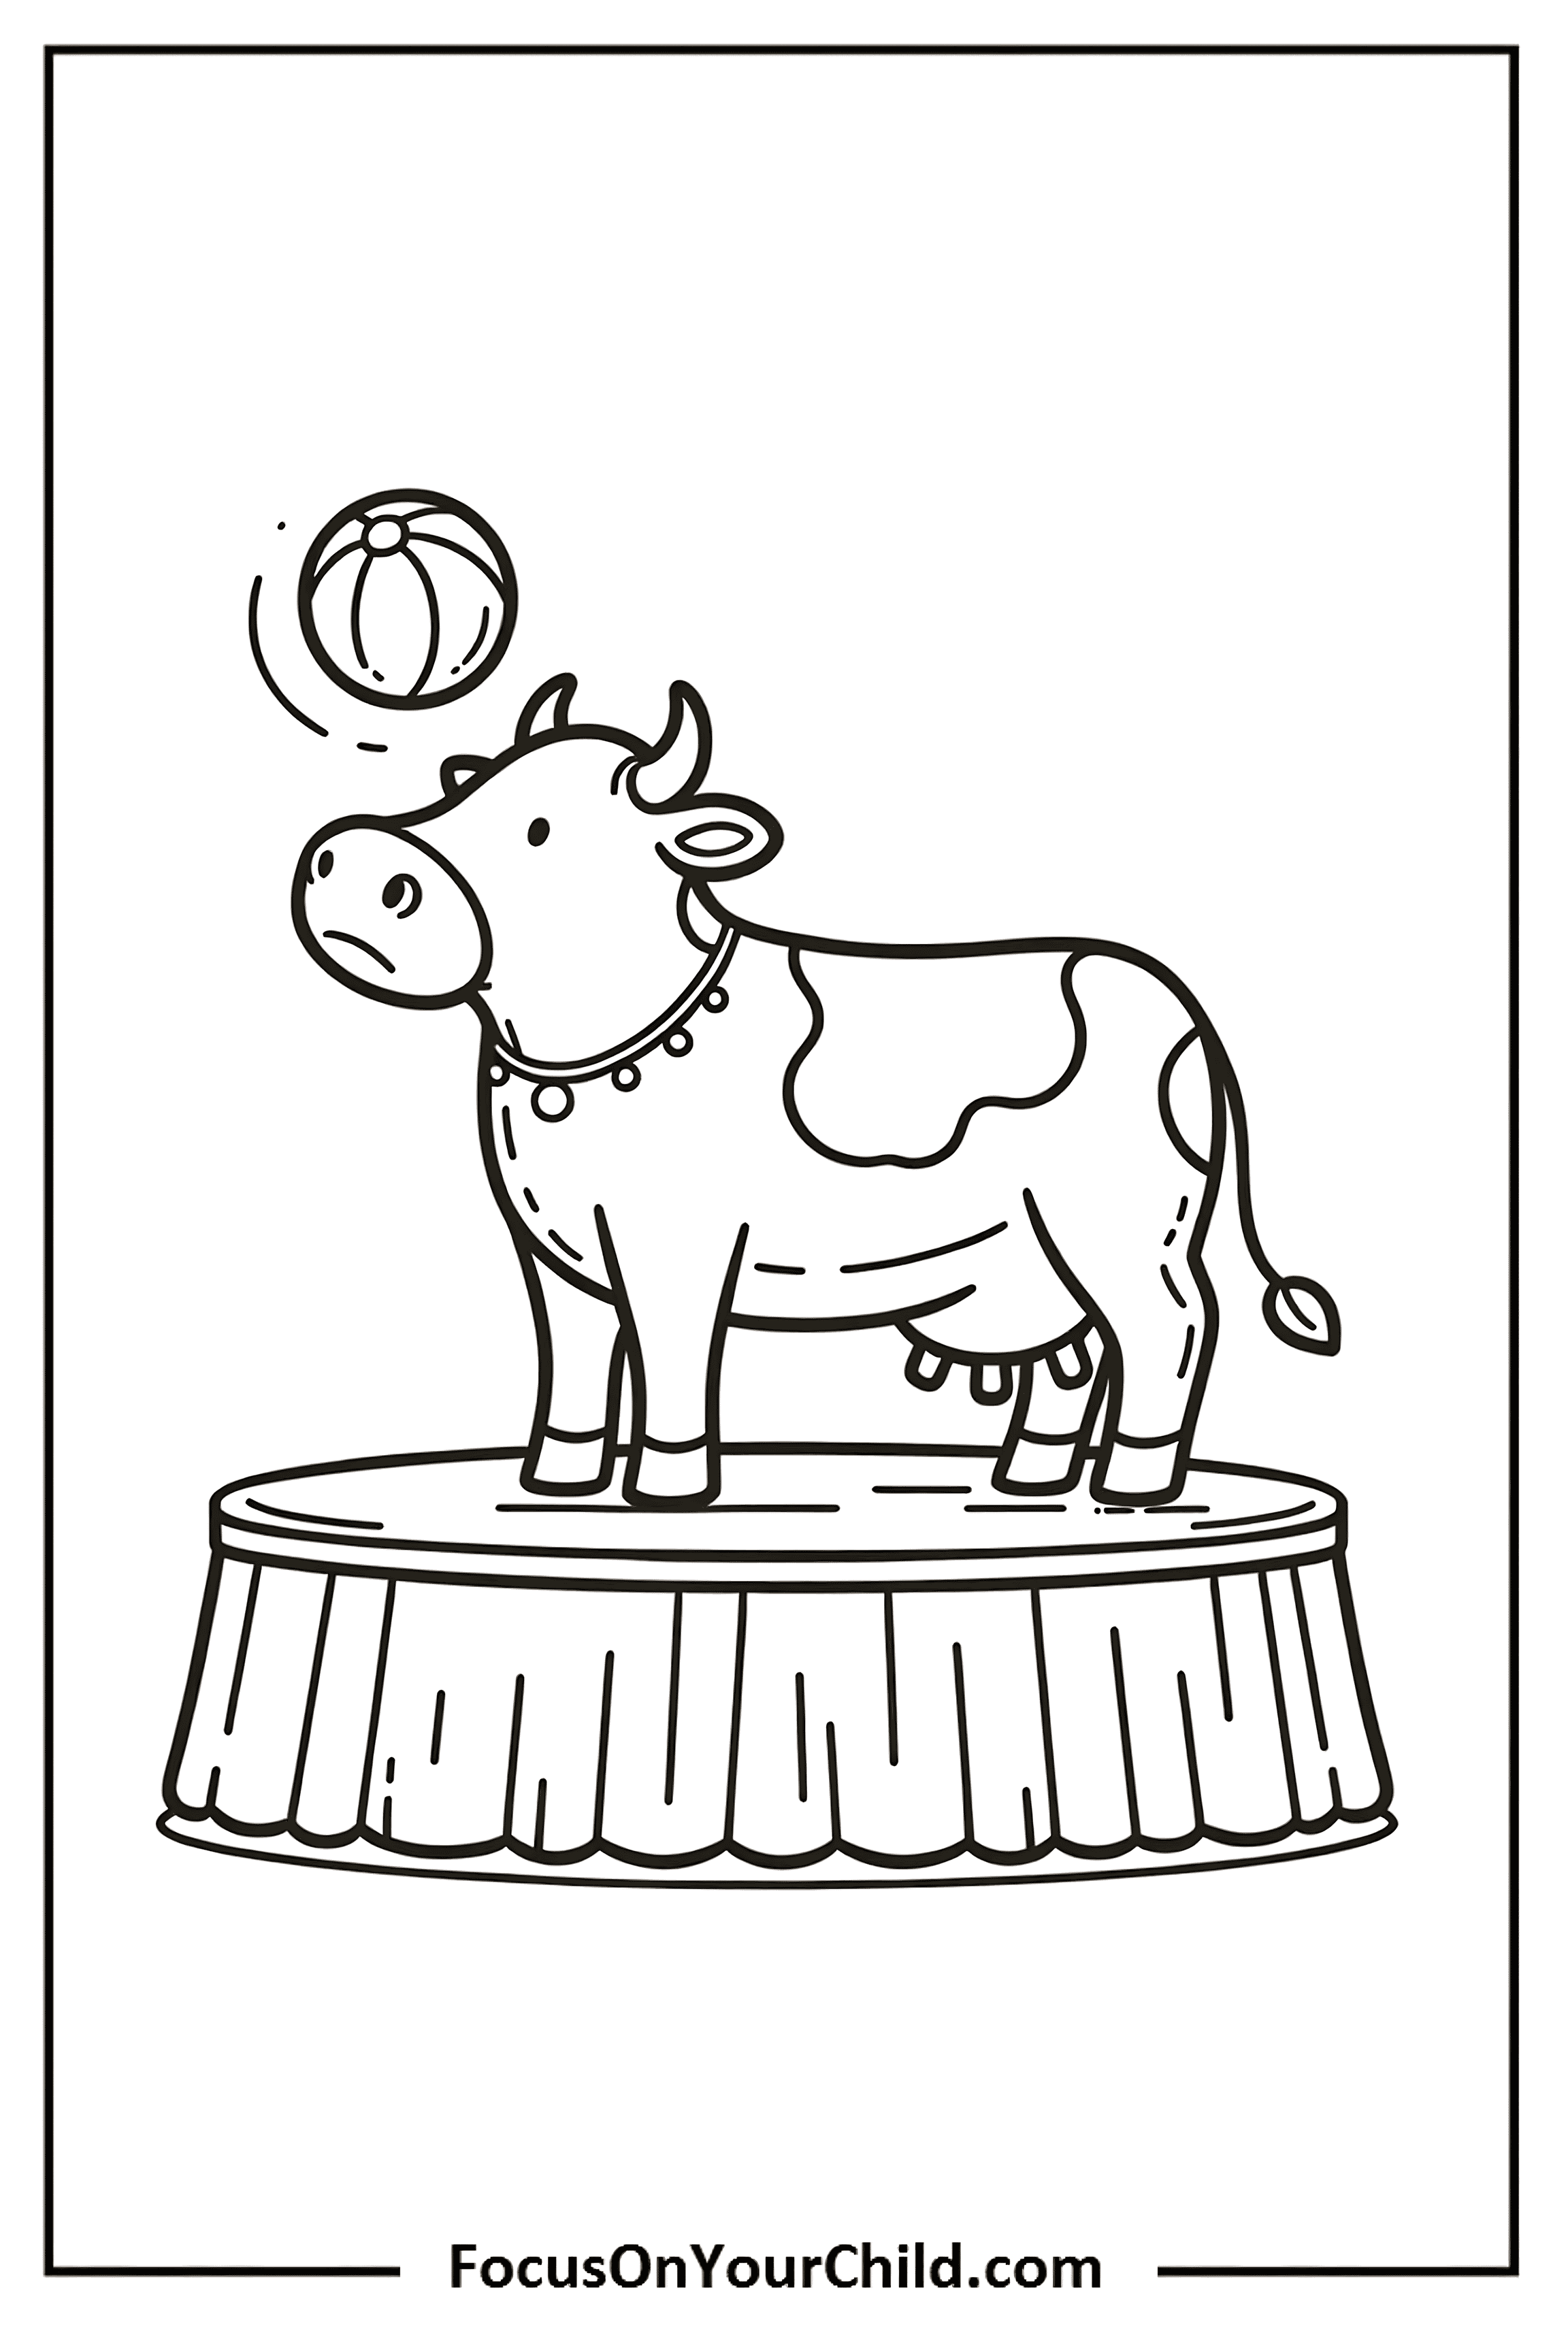 Whimsical circus cow balancing a ball on a platform.